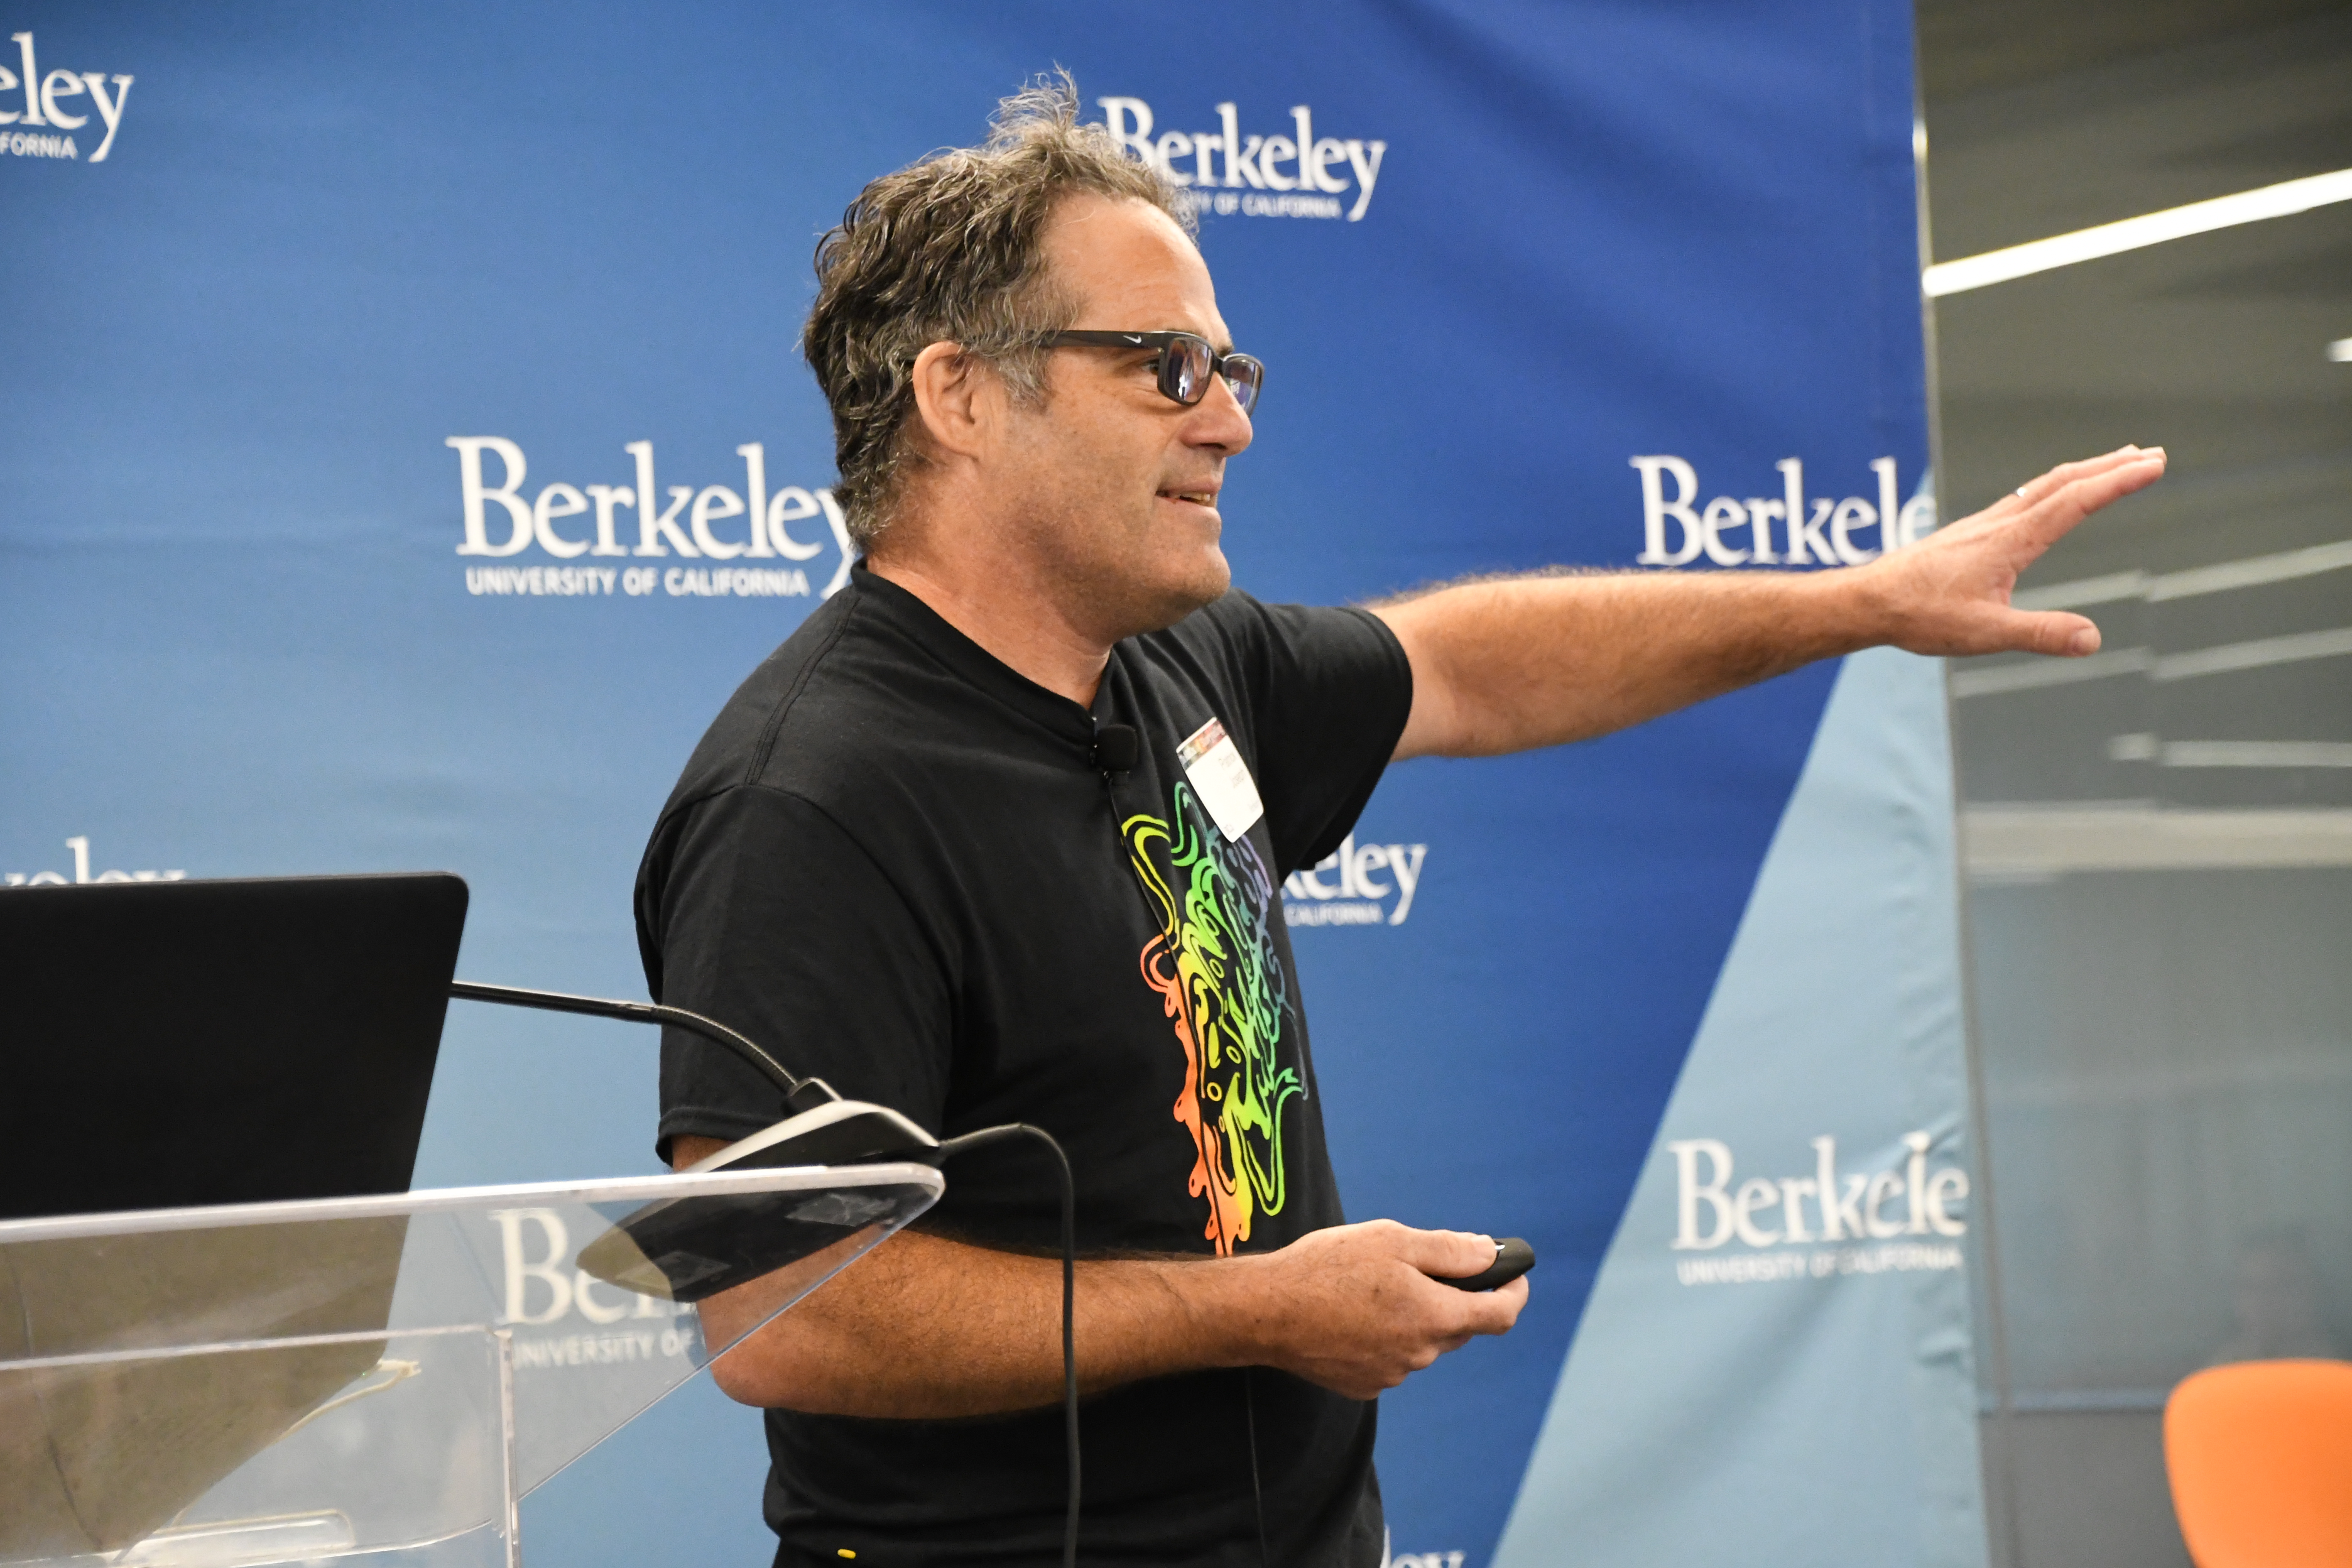 Patrick Joseph, Editor-in-Chief, CALIFORNIA Magazine at 2019 BC2 Conference